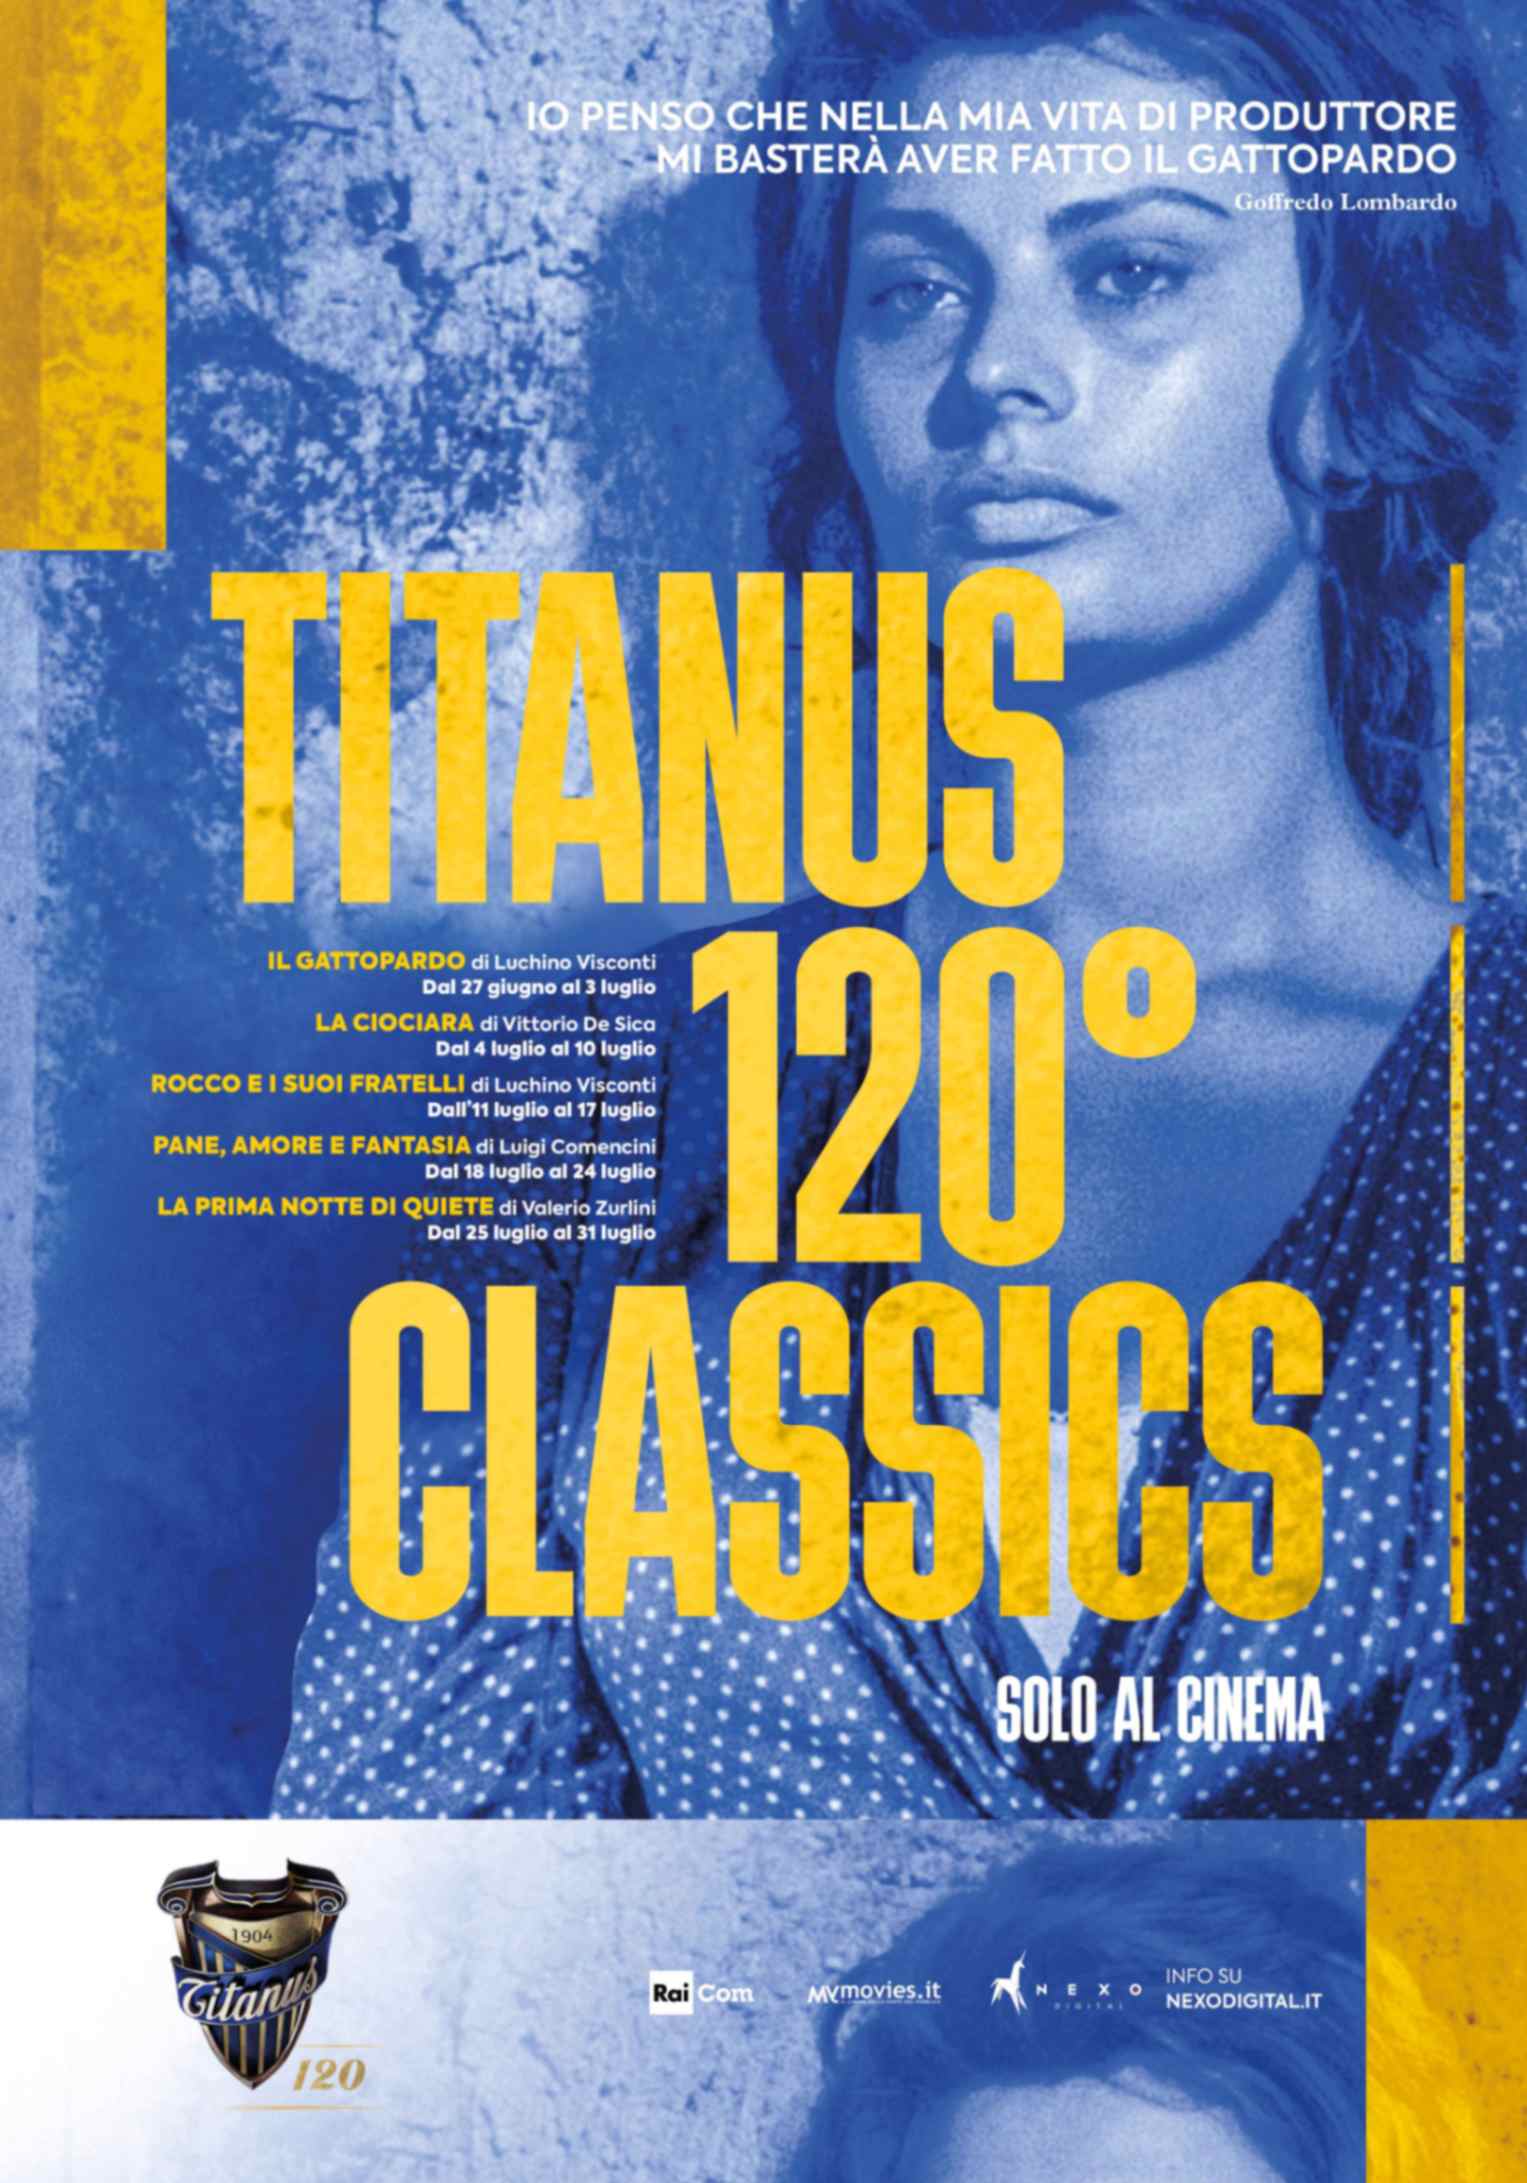 Titanus 120 Classics